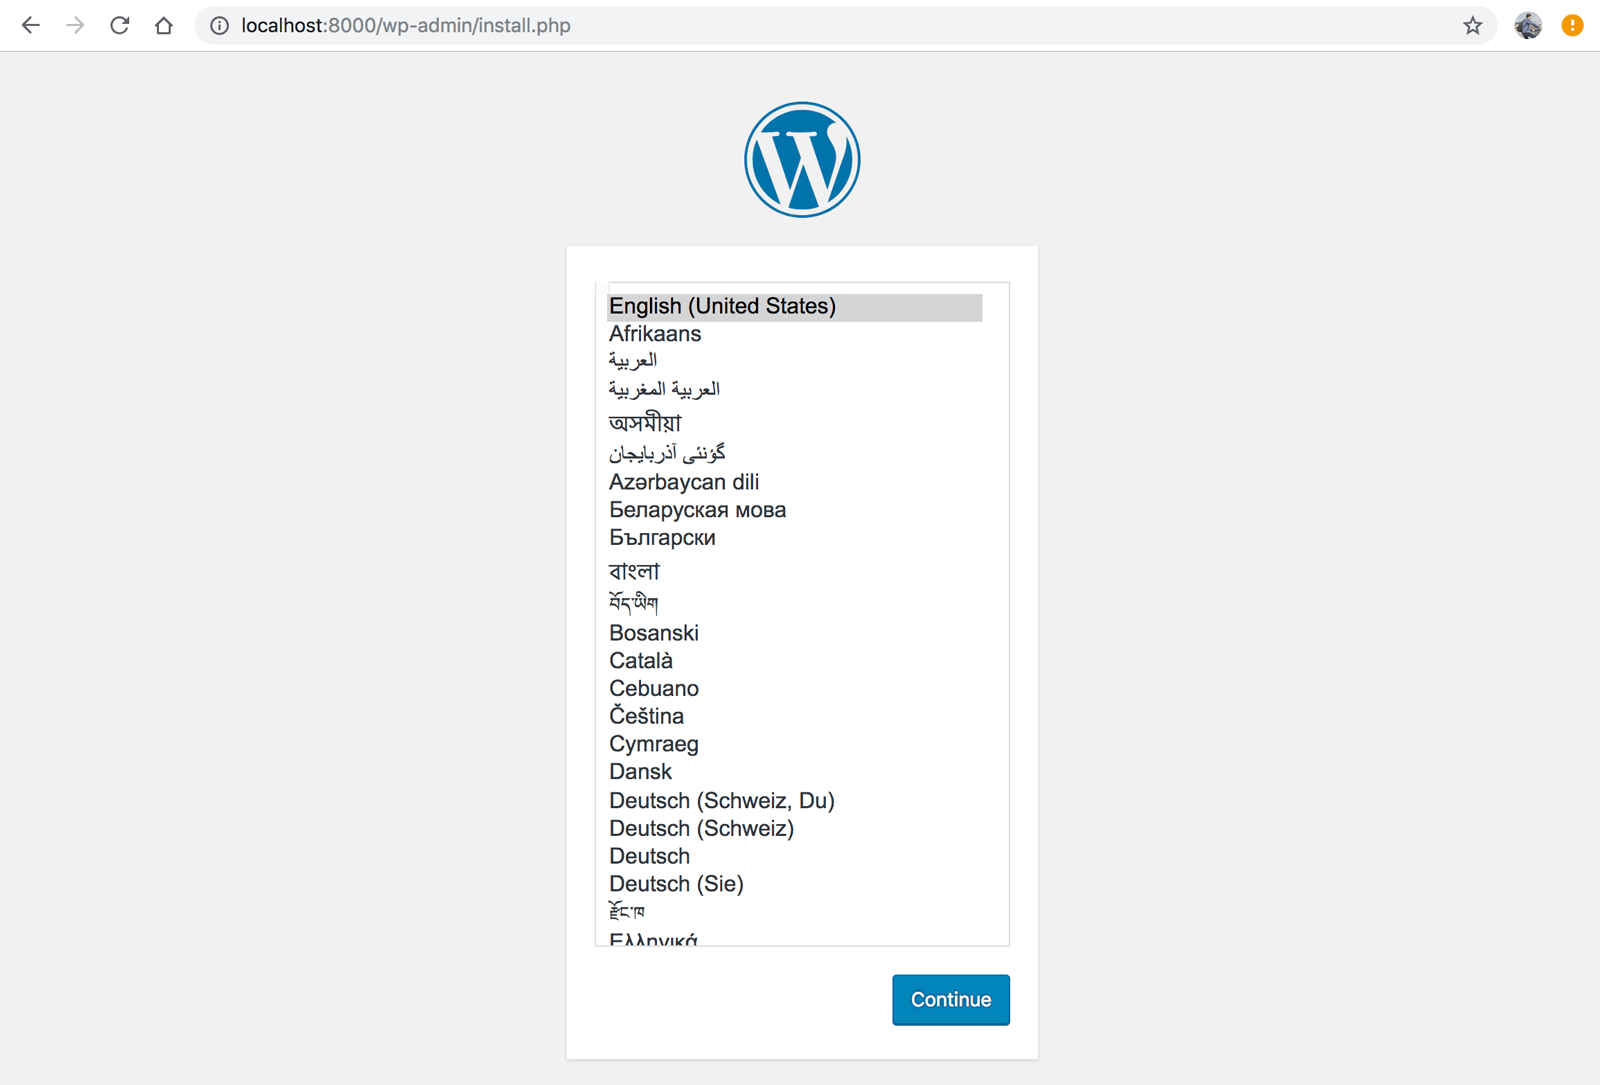 WordPressサイトが立ち上がり、インストール画面が表示された